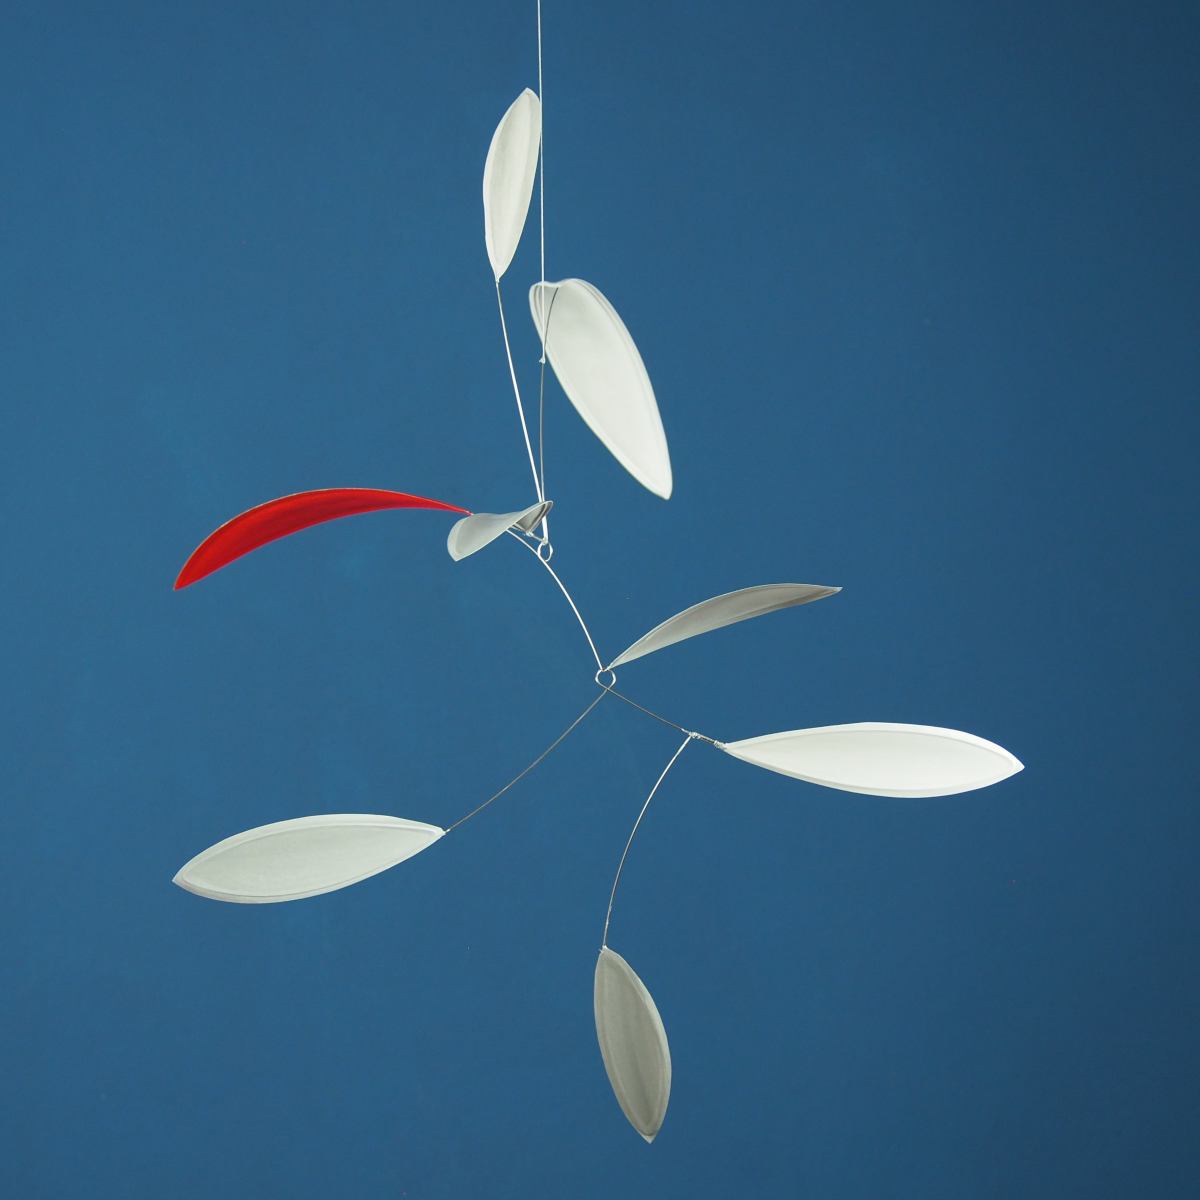 Zartes blattförmiges Mobile "Little Leaf" in Grau / Rot / Weiß, handgefertigt (60 x 50 cm)